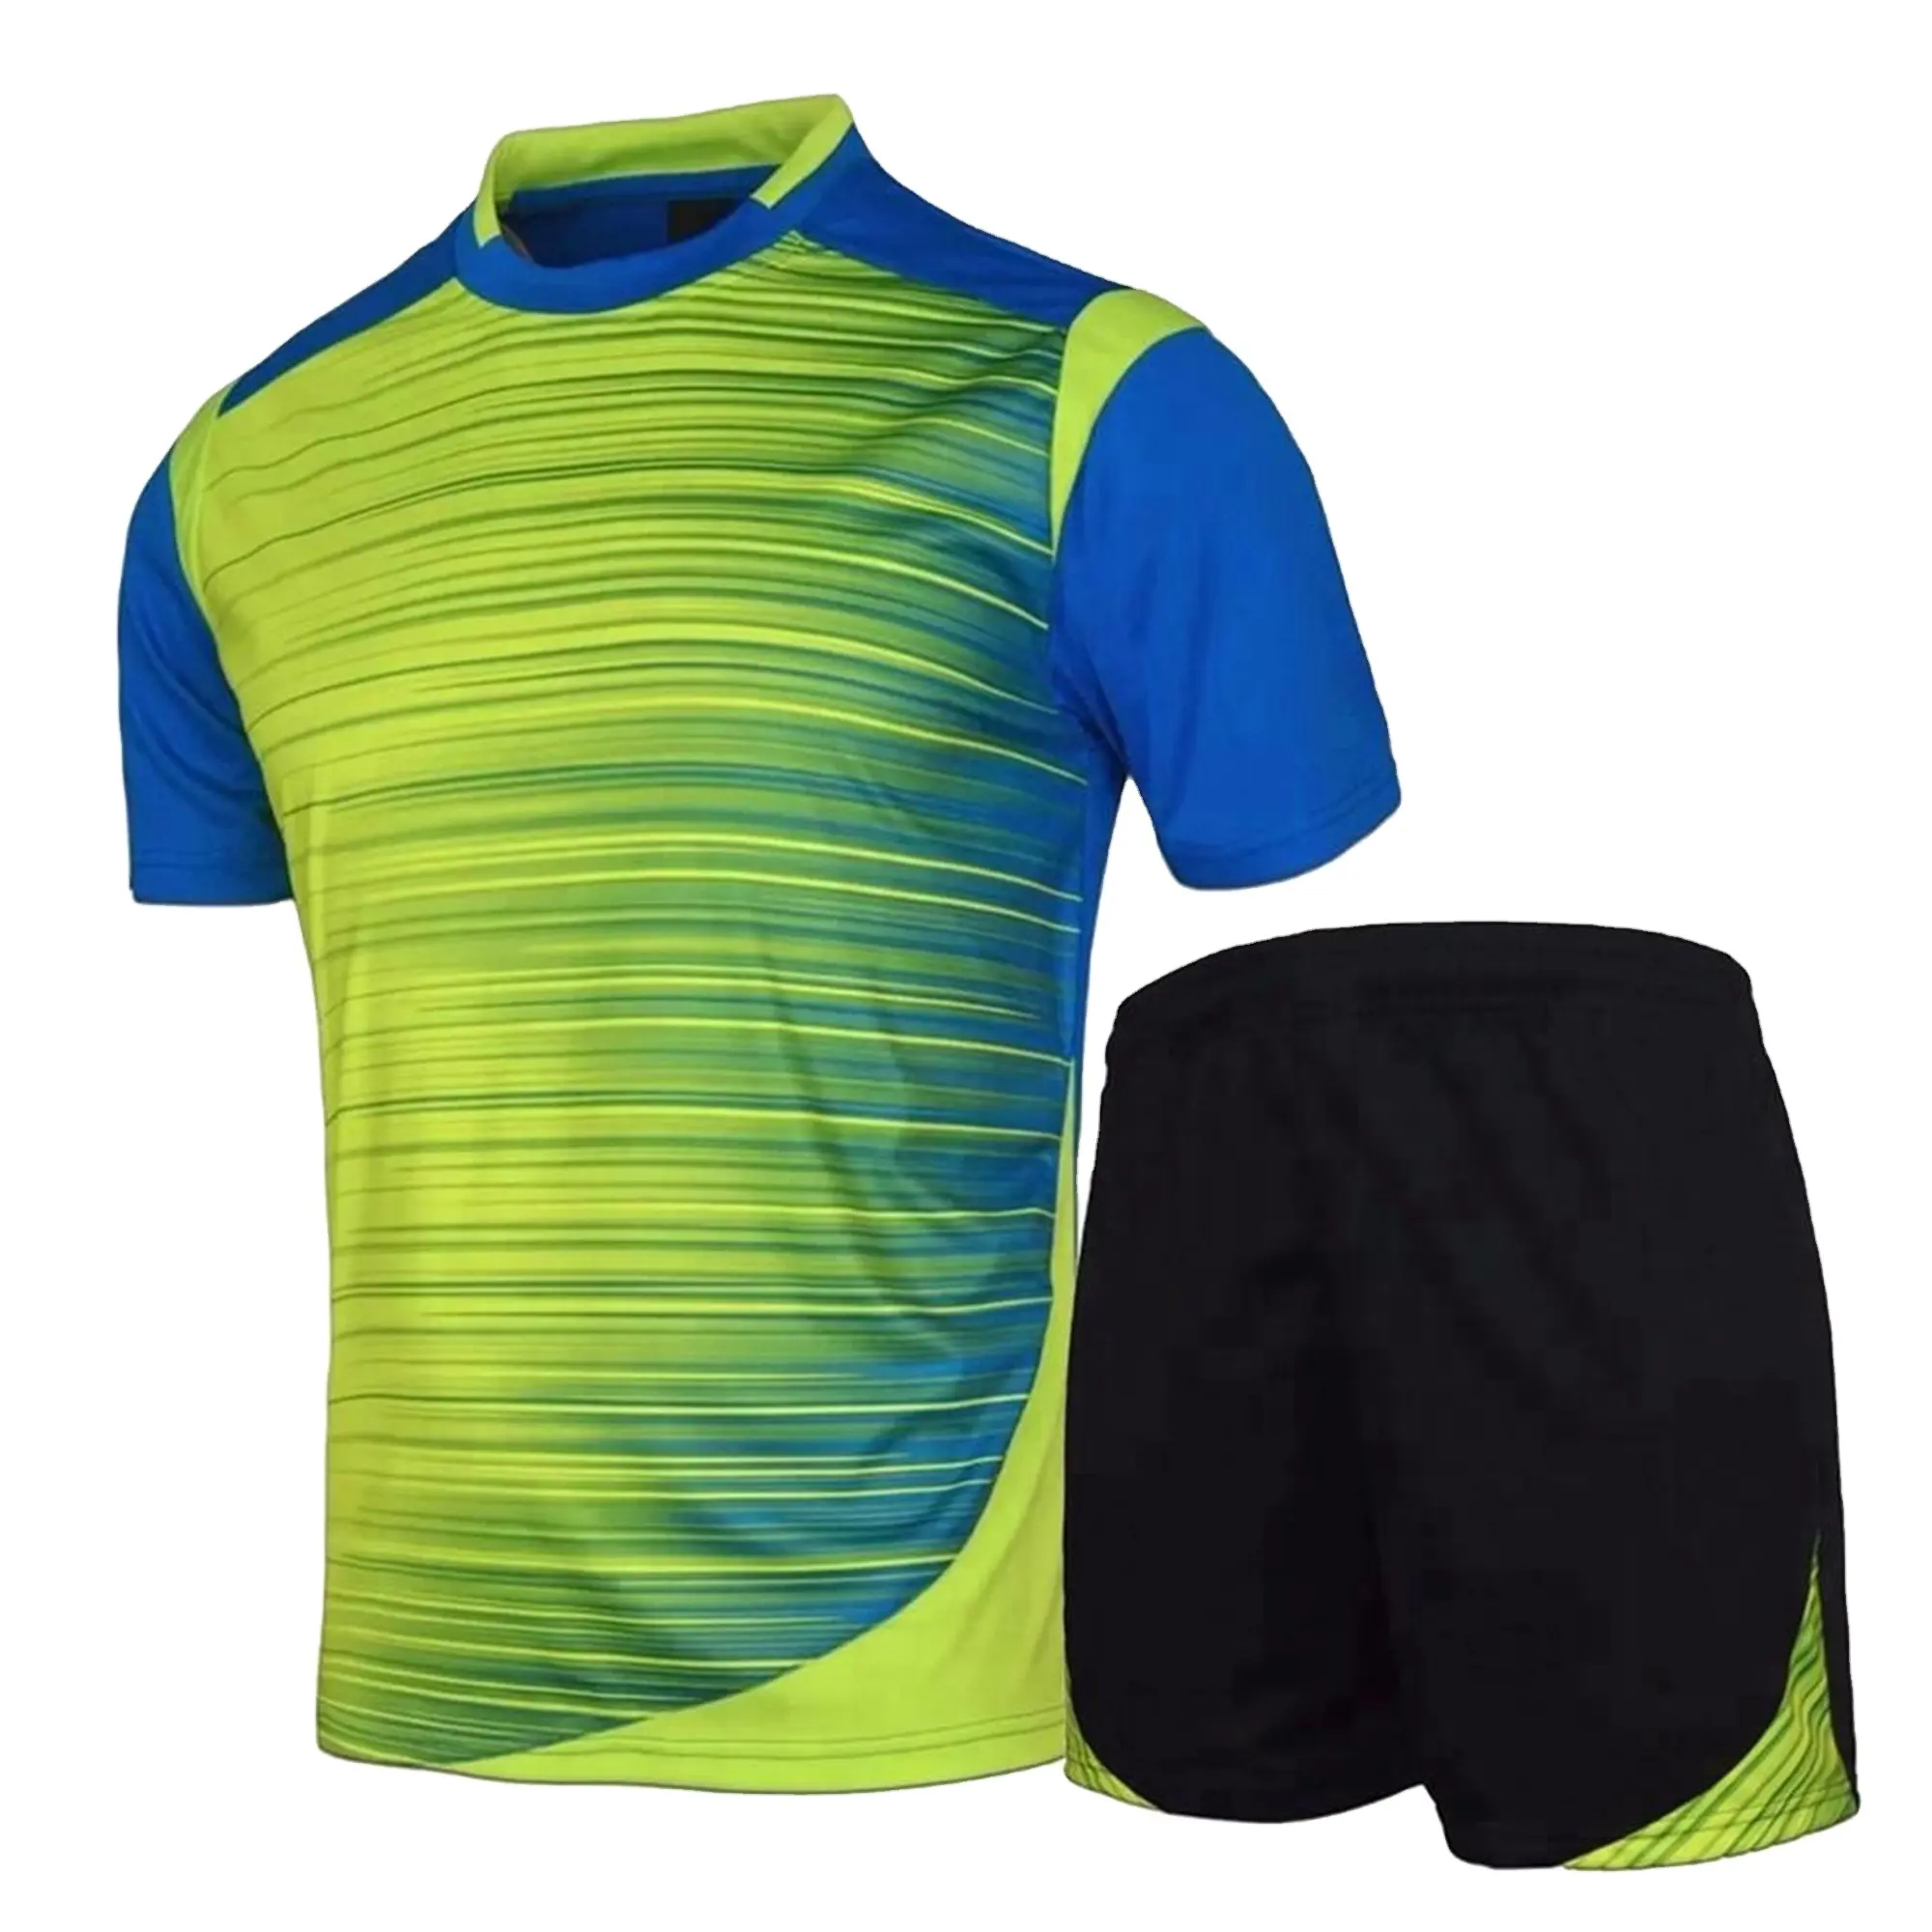 Bruxelles Sports prezzo economico fornitura di alta qualità quick dry women soccer uniform Set di uniformi da calcio personalizzate per sublimazione